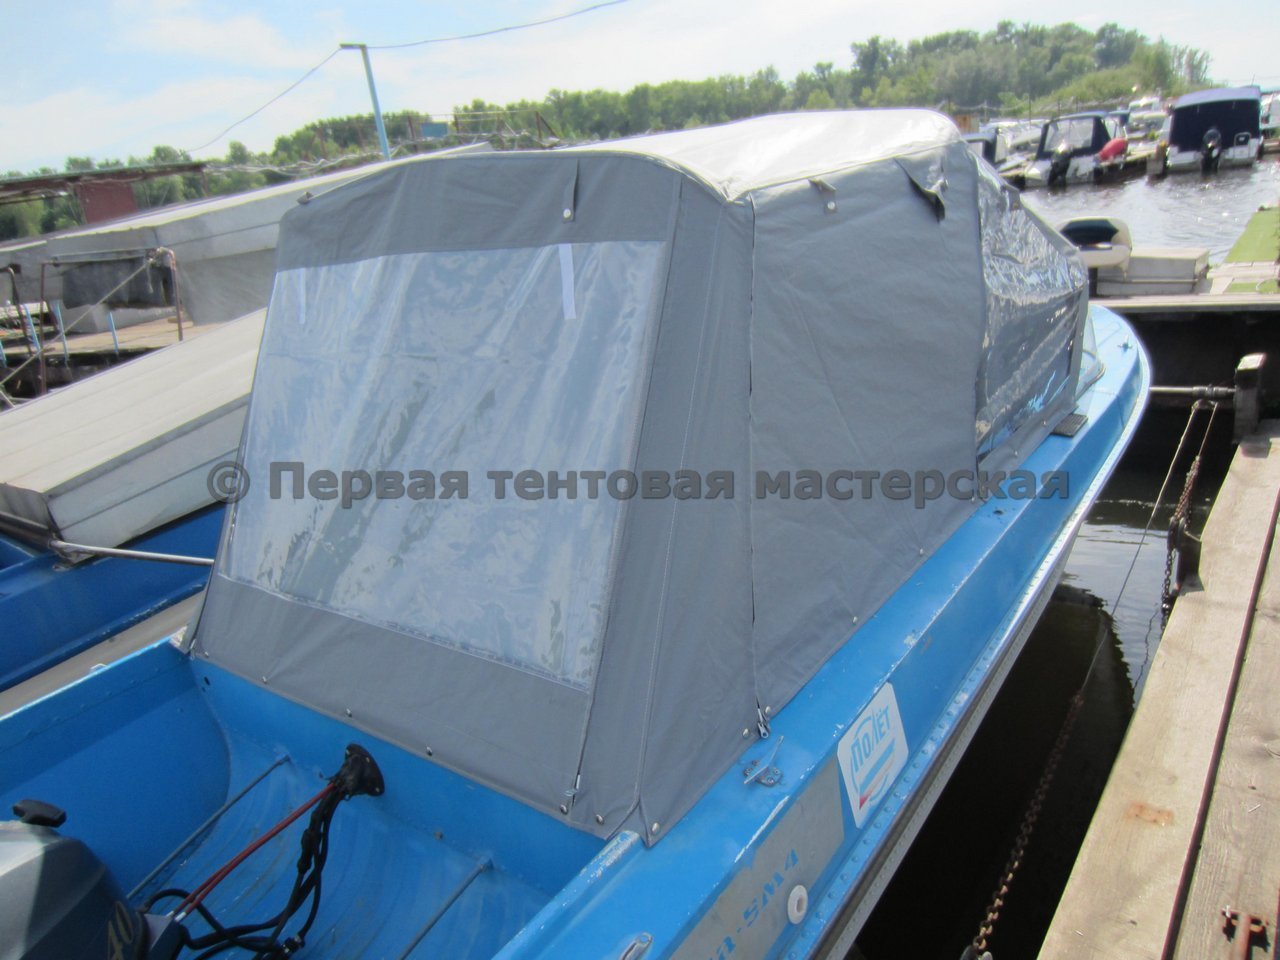 tents14_047